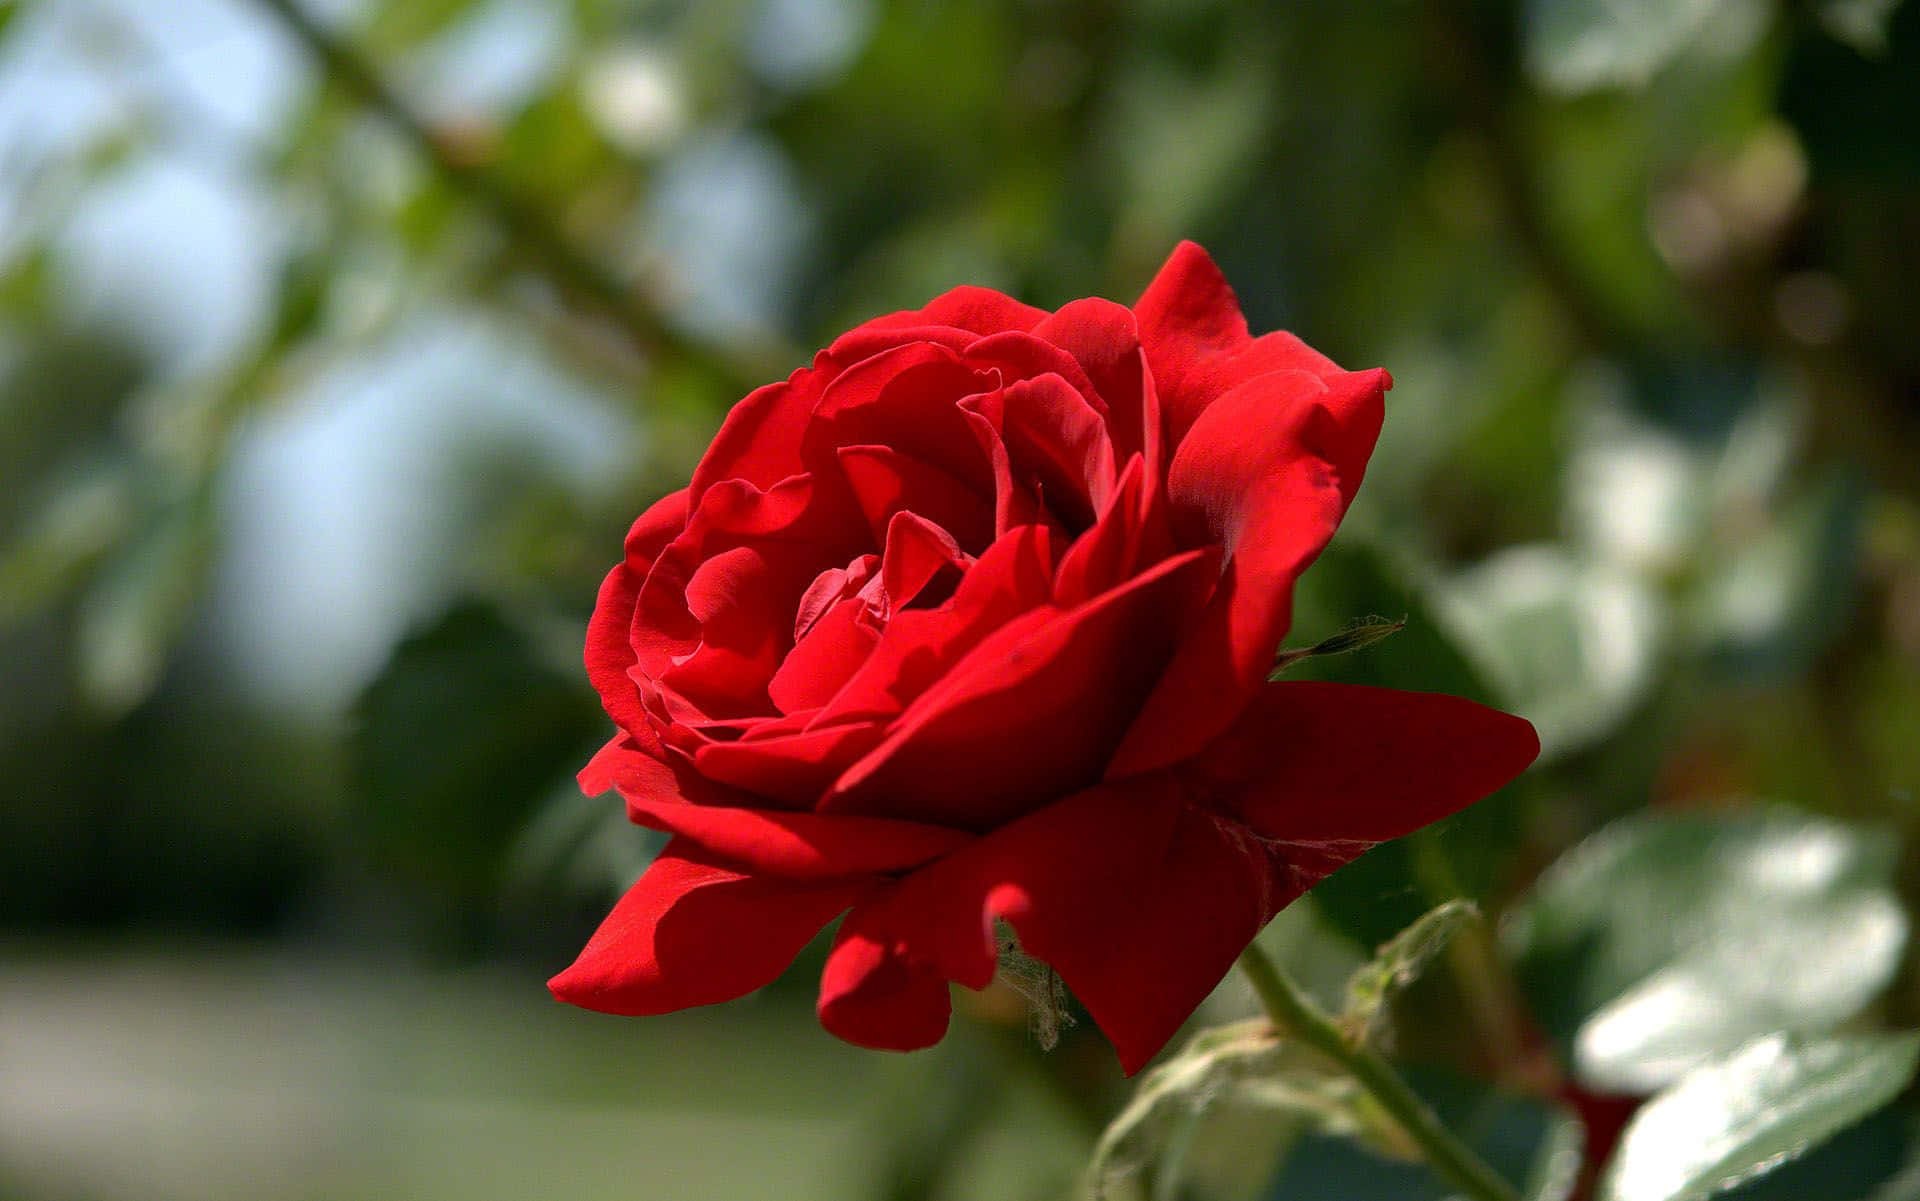 Visdin Kærlighed Med En Smuk Rød Rose.